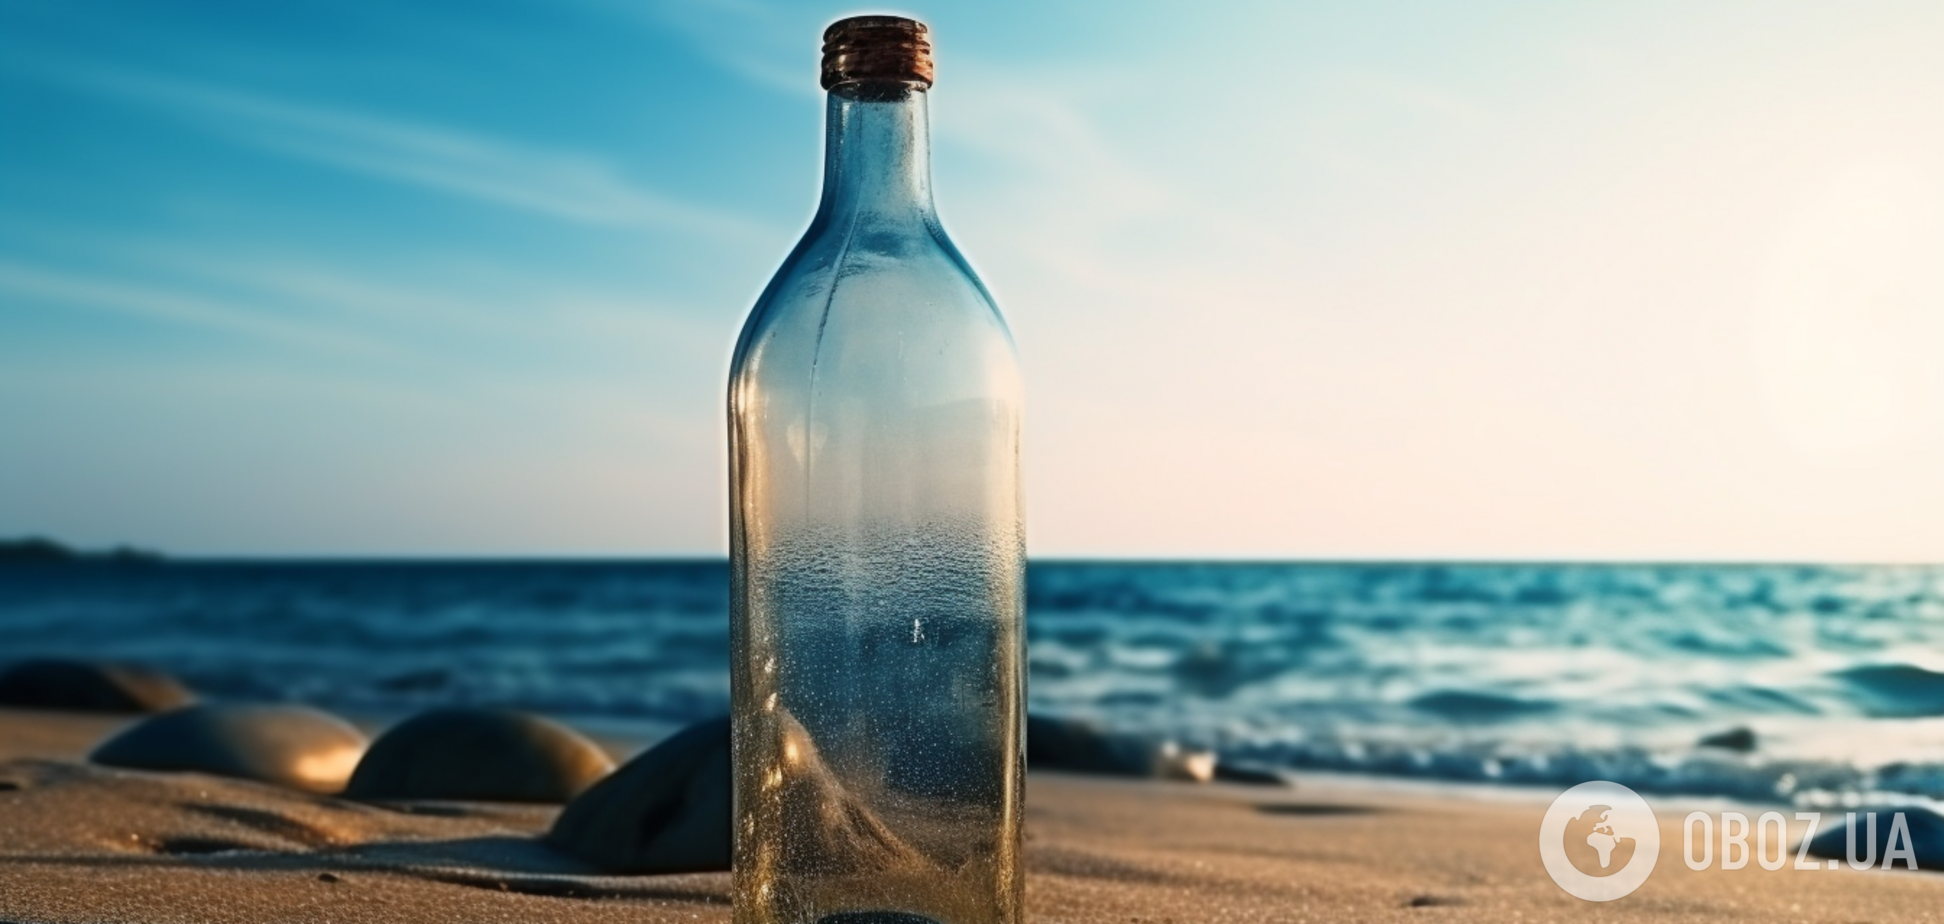 Категорически нельзя открывать: в США на берег массово вымывает 'ведьмины бутылки'